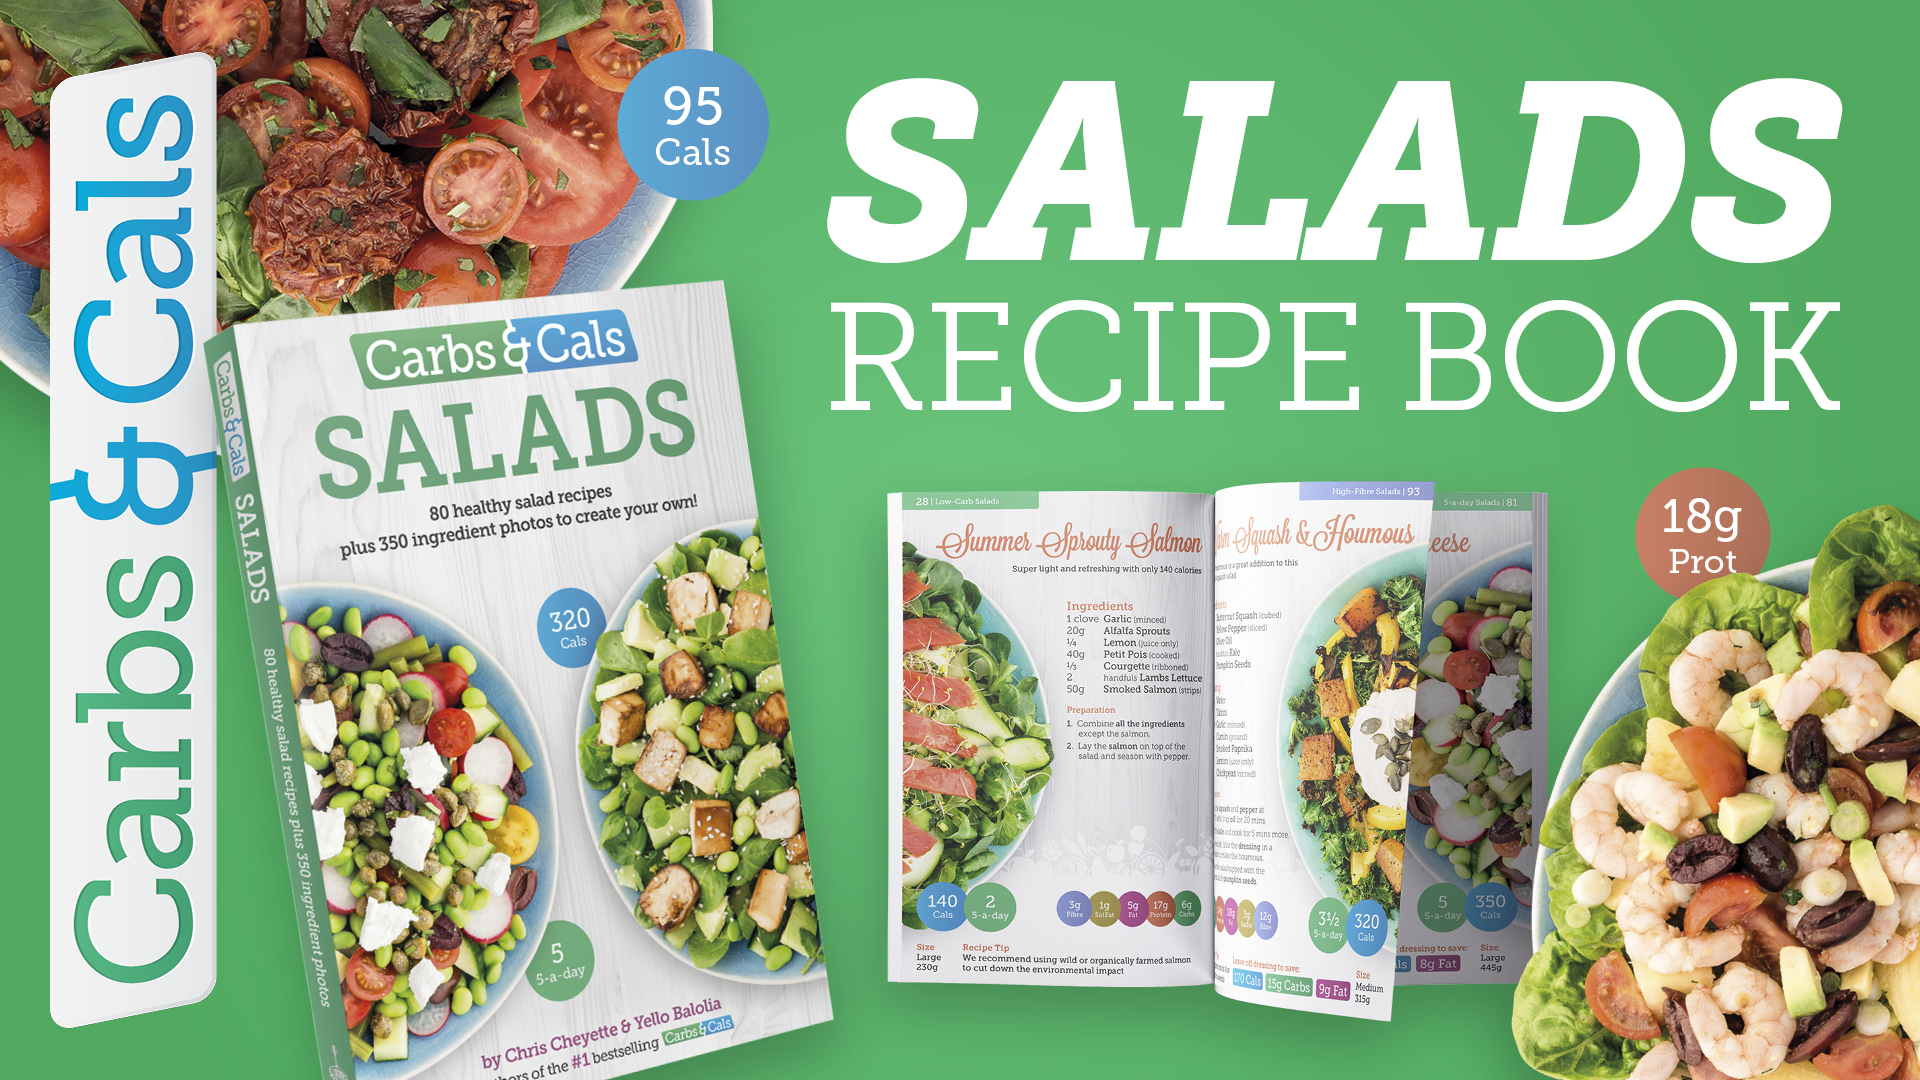 Video - Carbs & Cals Salads Recipe Book